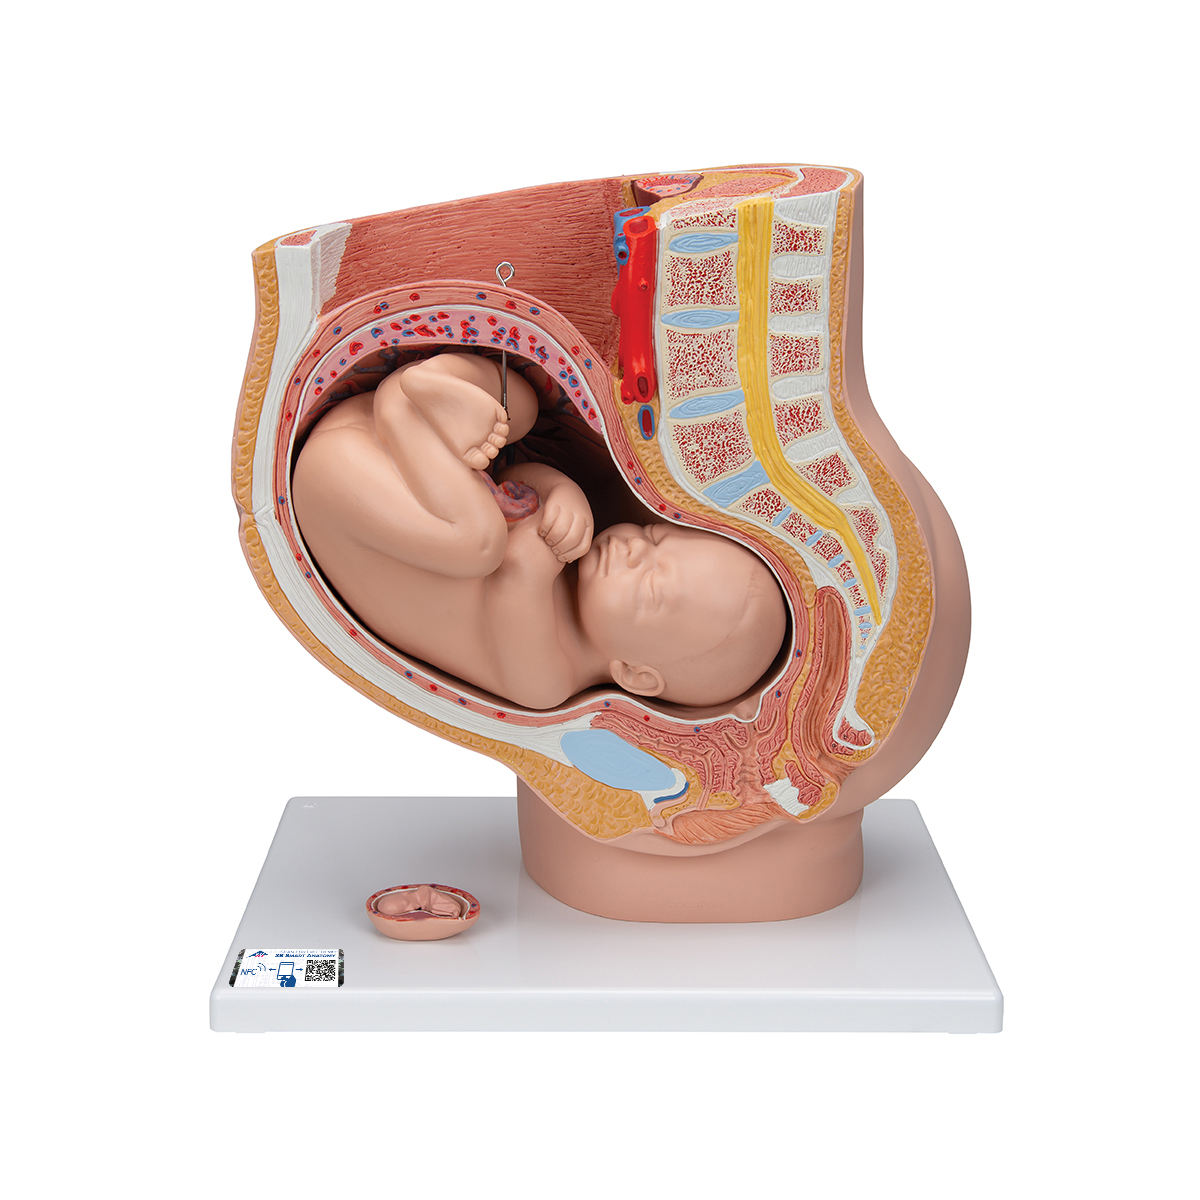 Bassin de démonstration de l'accouchement - 3B Smart Anatomy